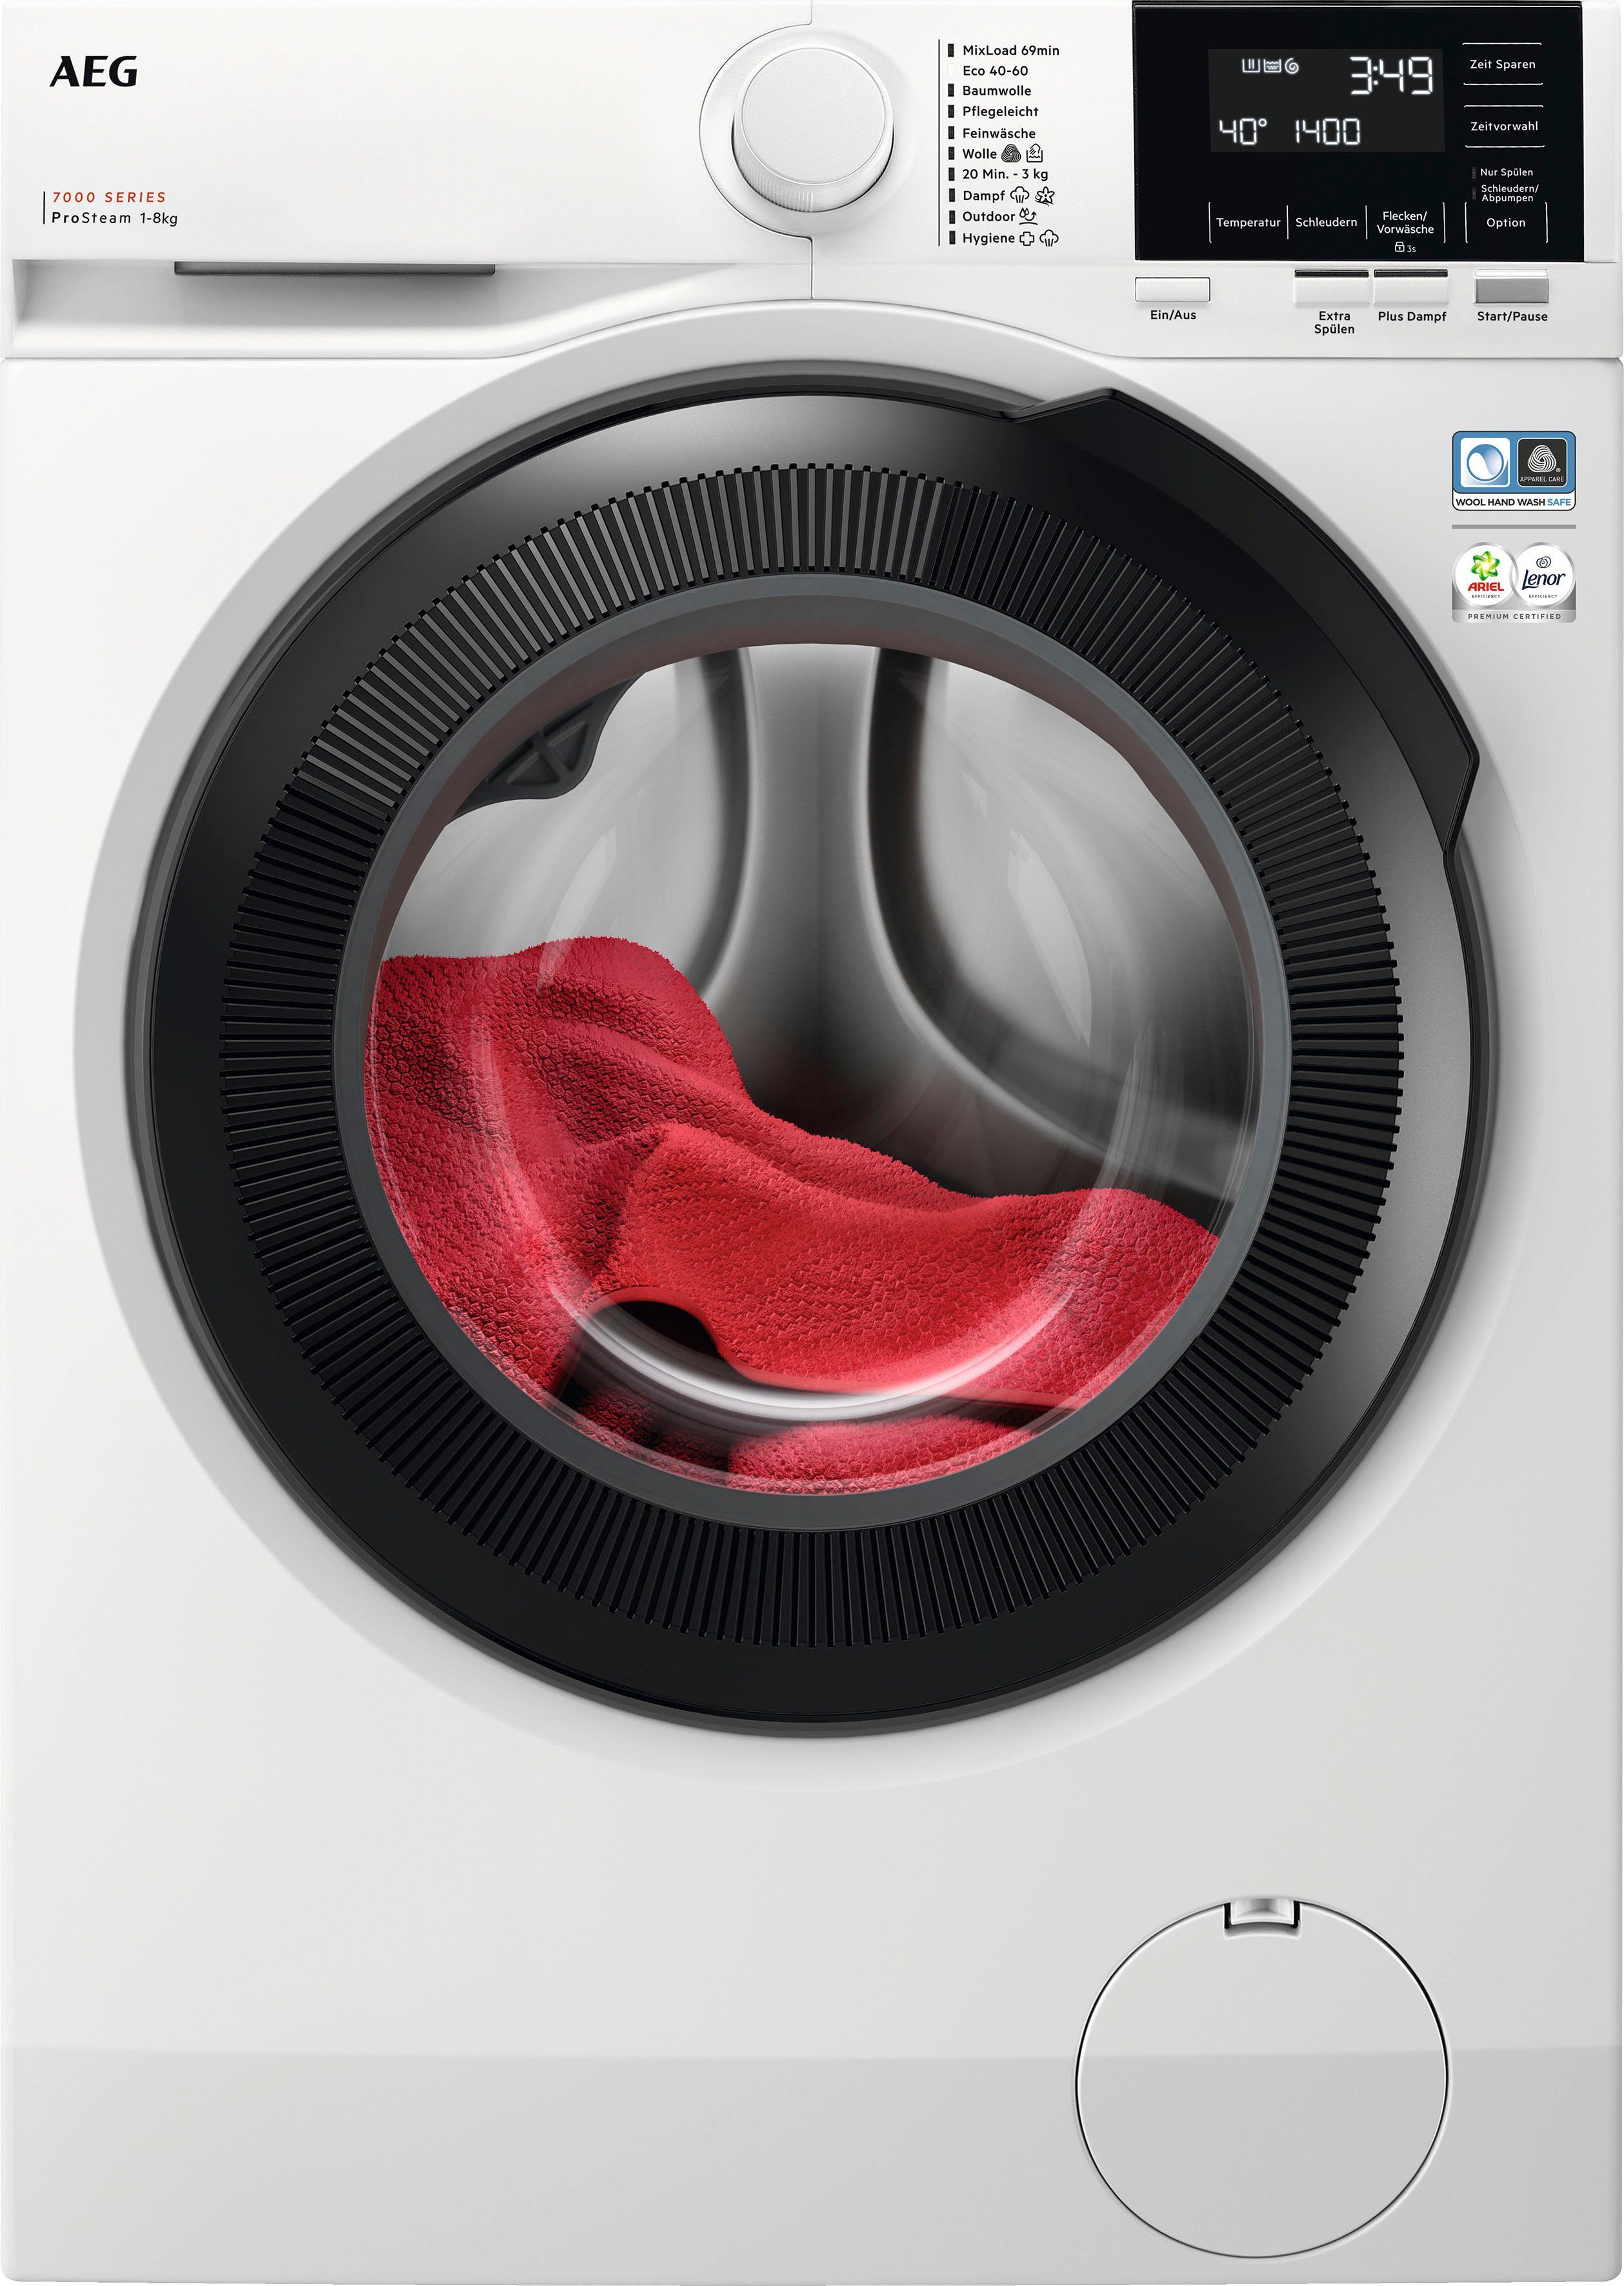 AEG Waschmaschine 7000 LR7G60480, 8 Wasserverbrauch 96 % U/min, ProSteam 1400 kg, für weniger - Dampf-Programm